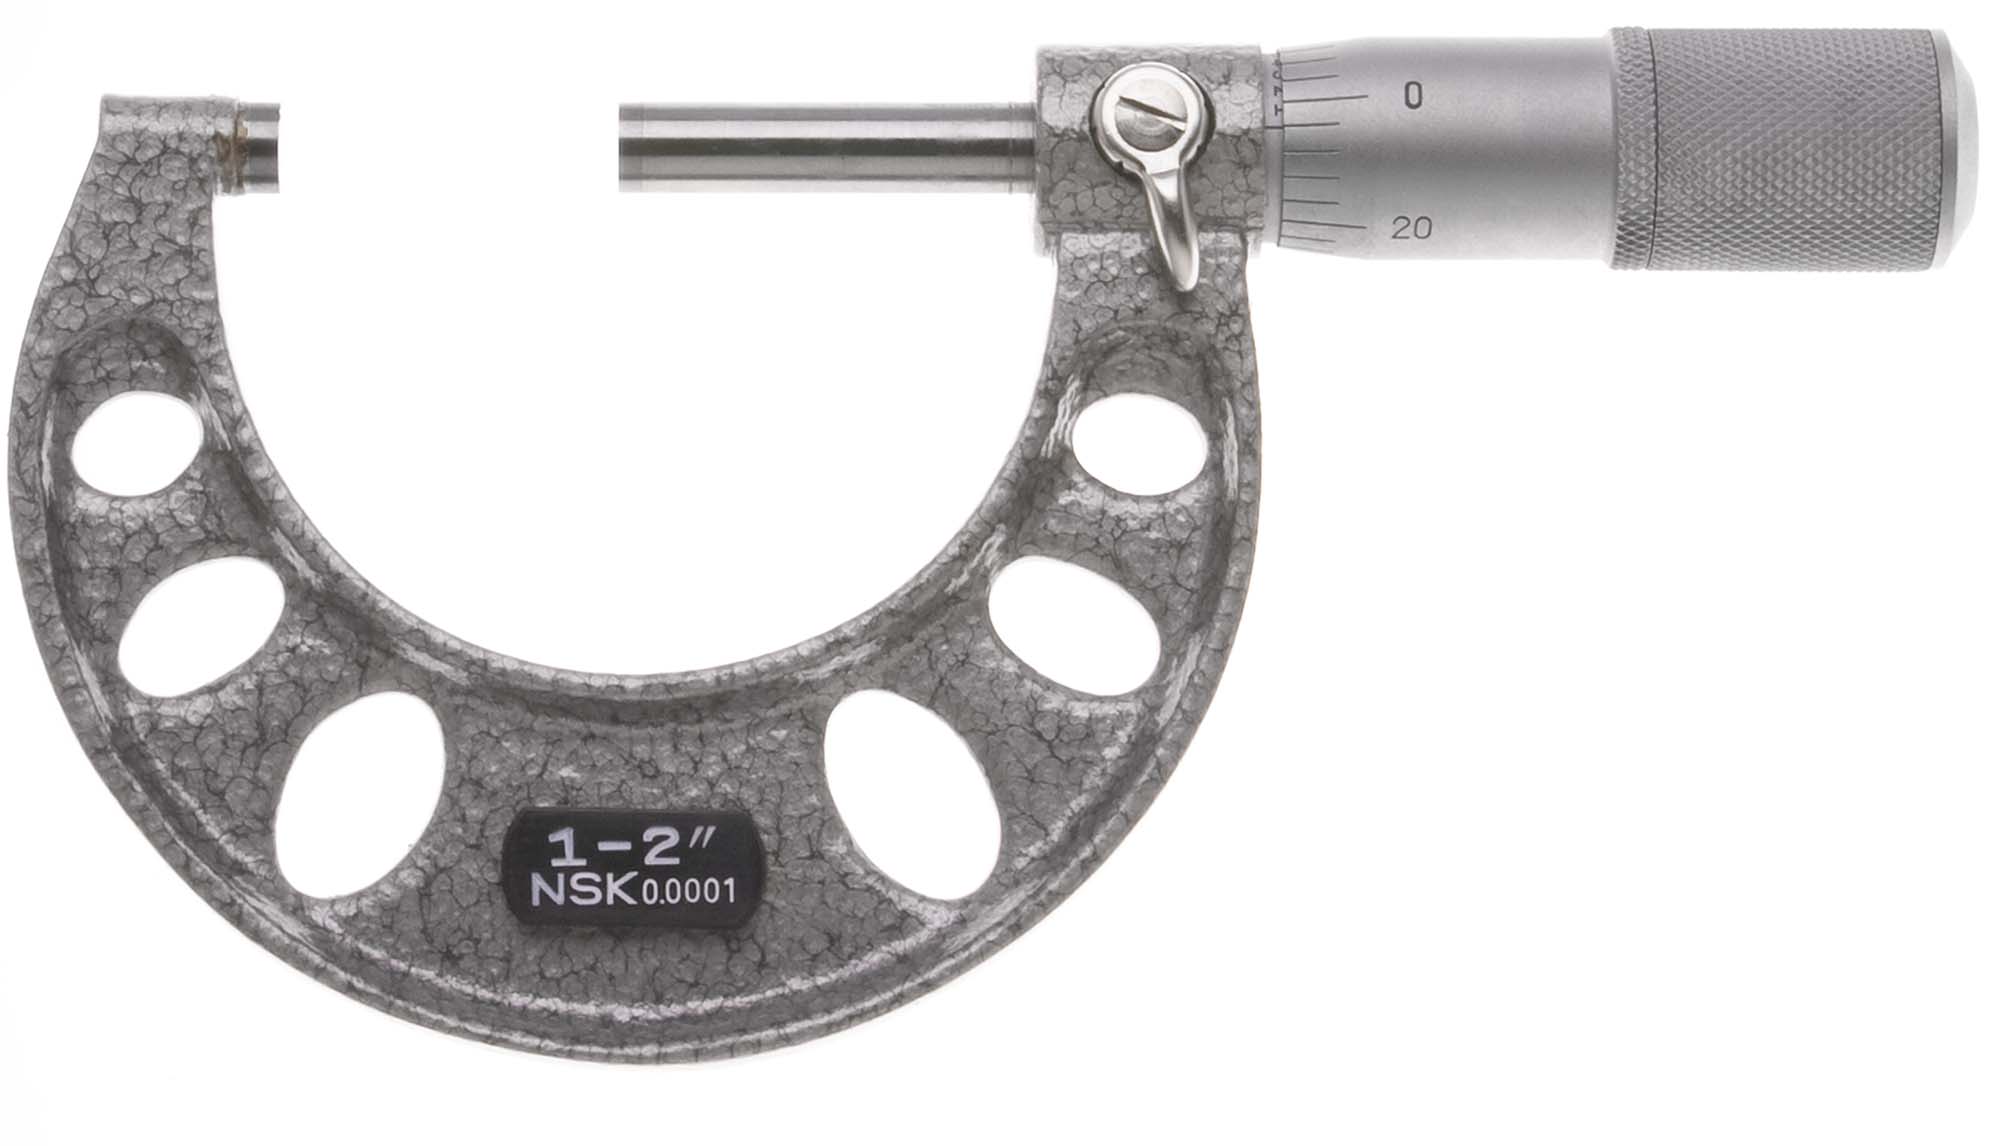 1-2" NSK Outside Micrometer